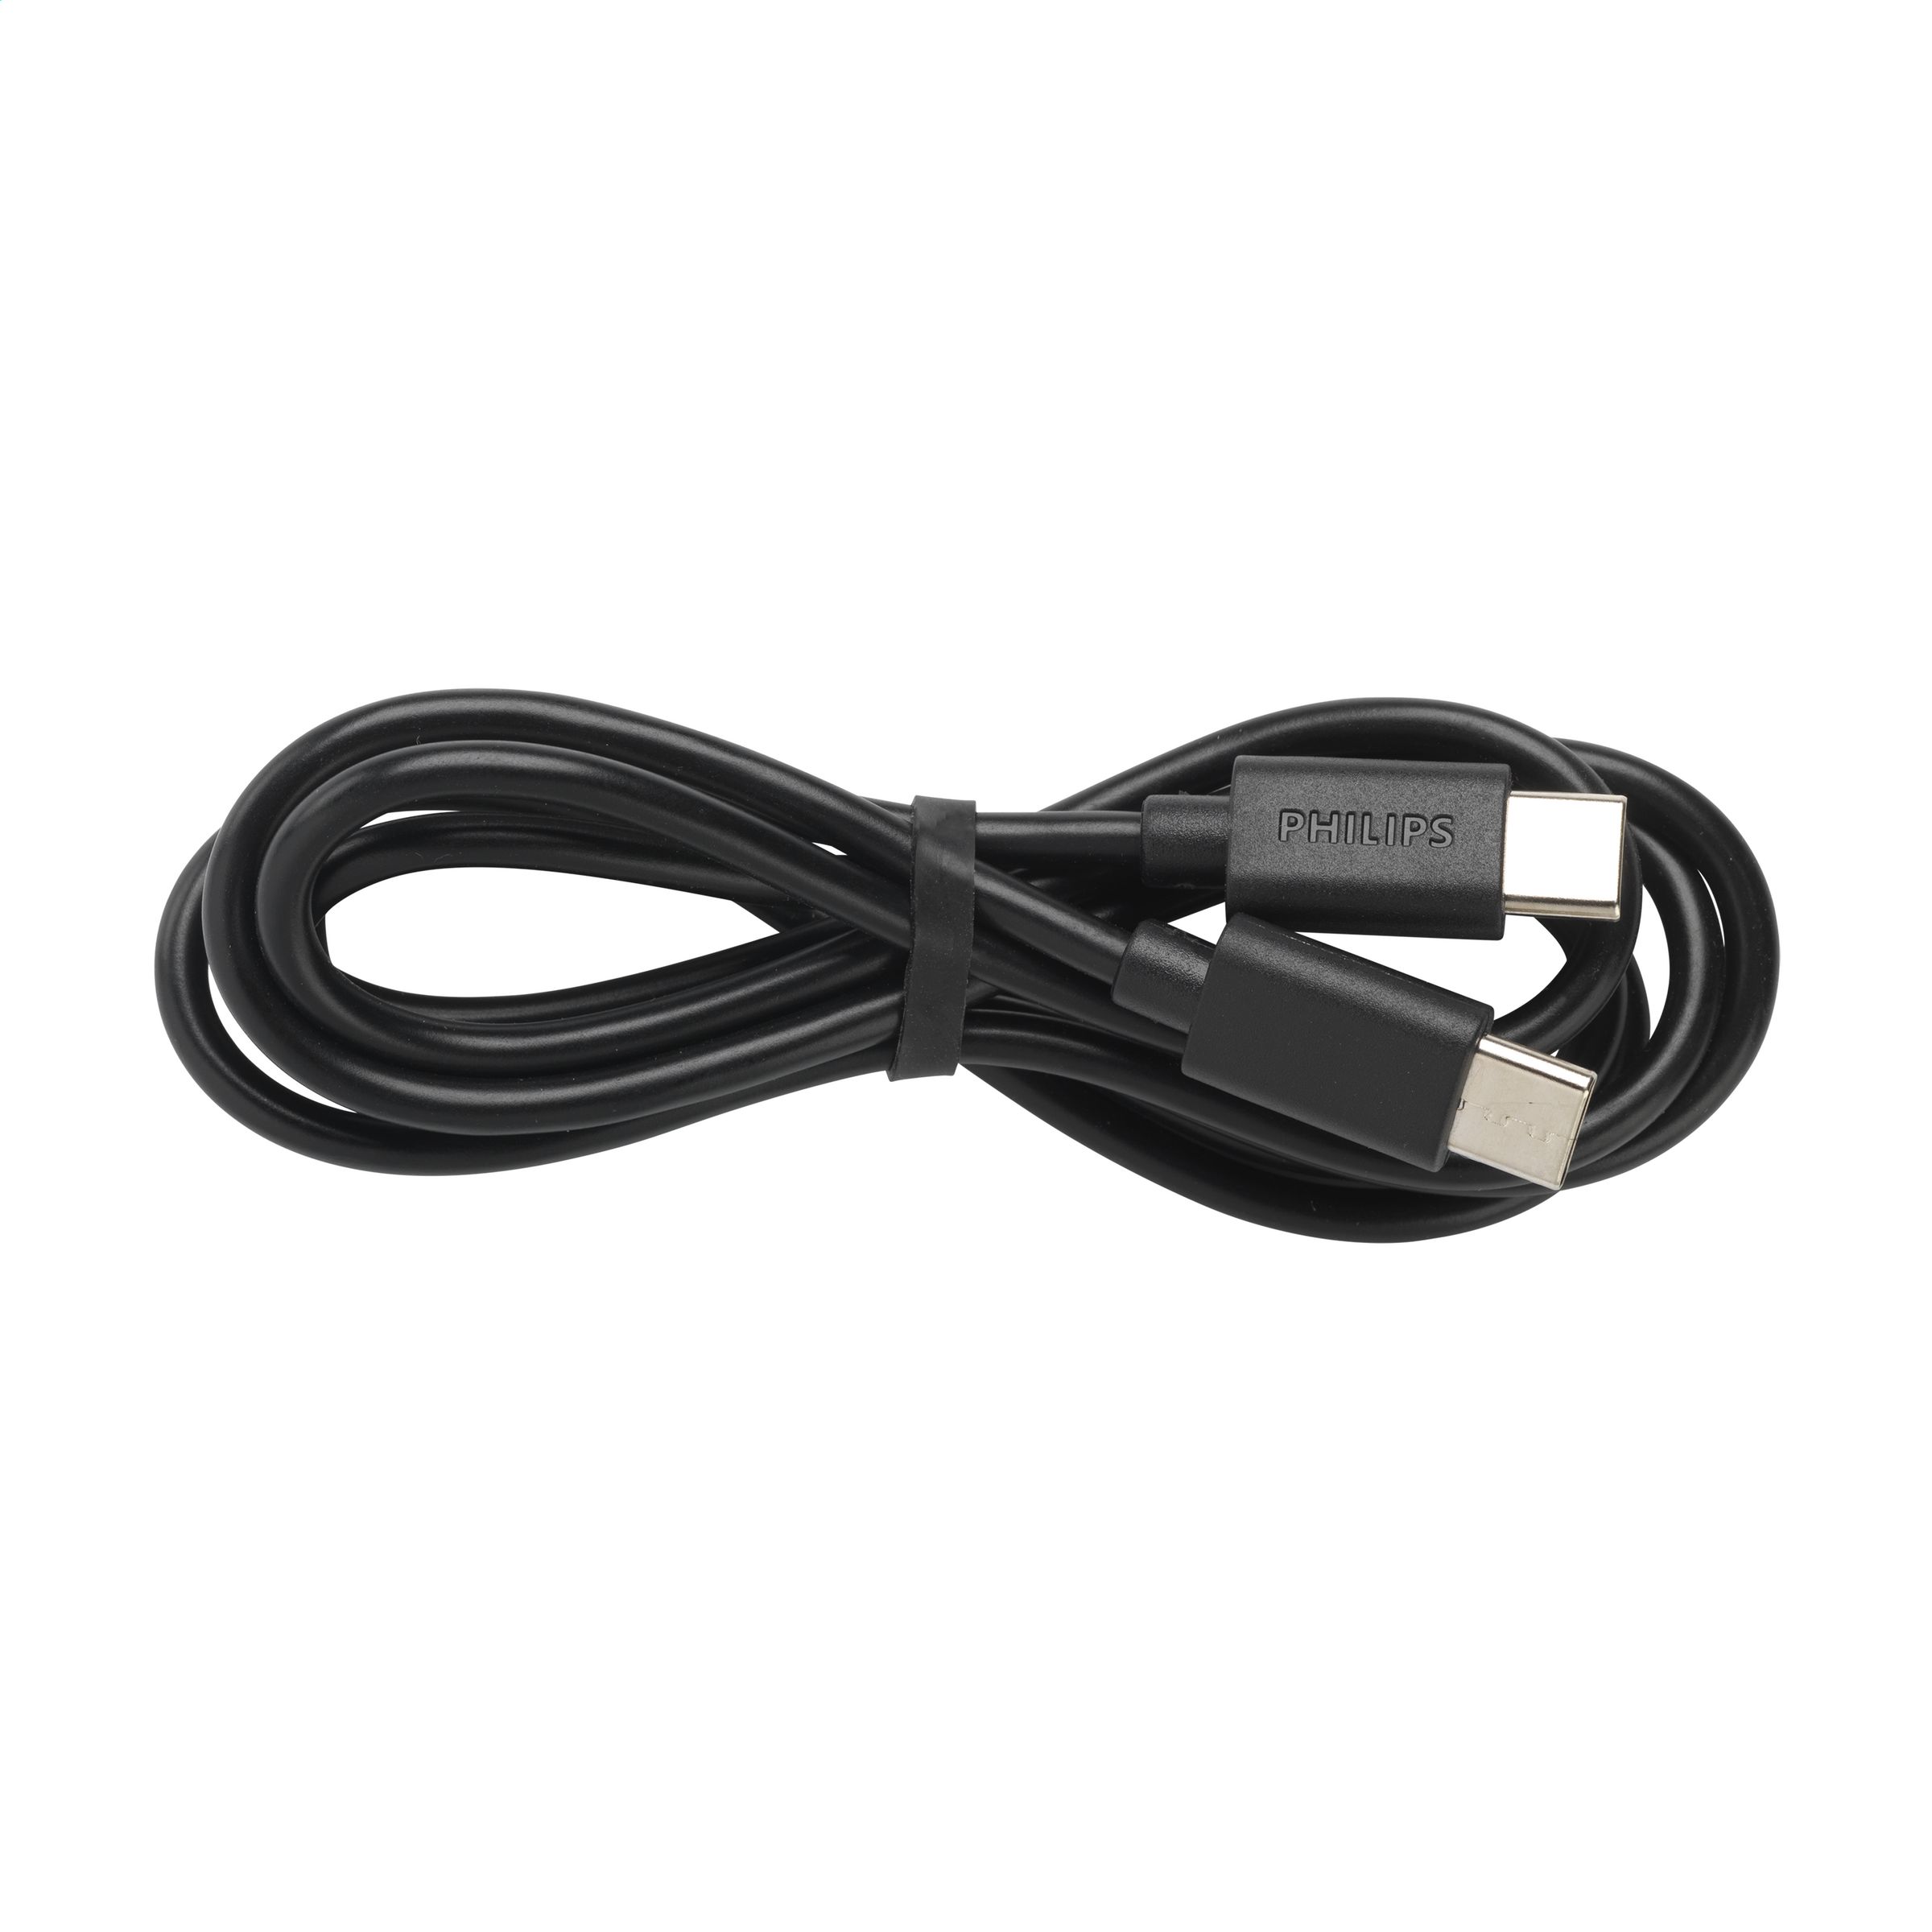 Cable de sincronización y carga USB-C de Philips - Avebury - Urkabustaiz